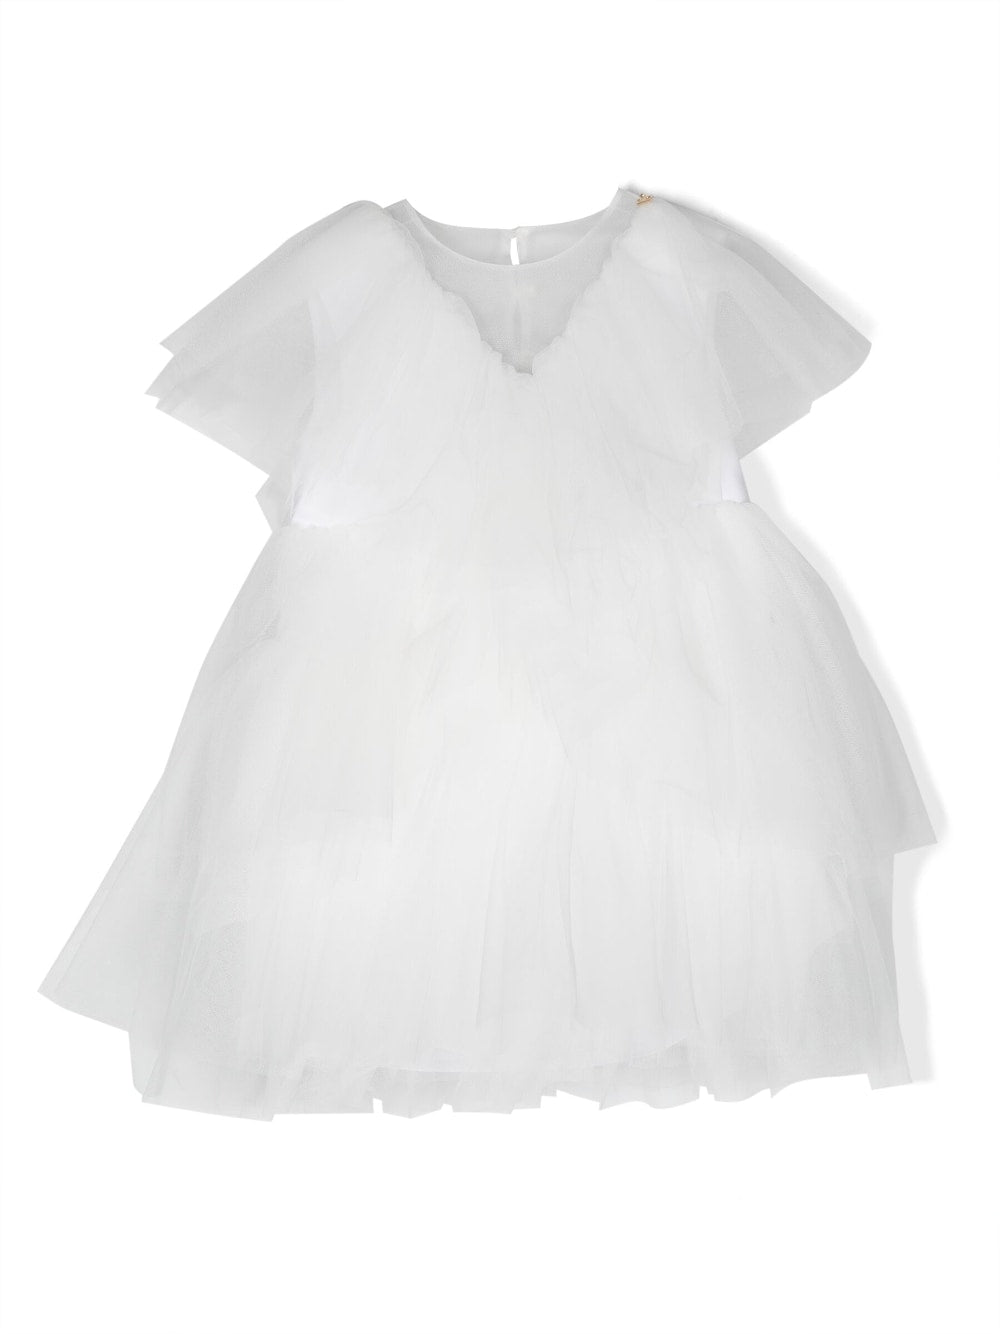 White tulle dress for girls